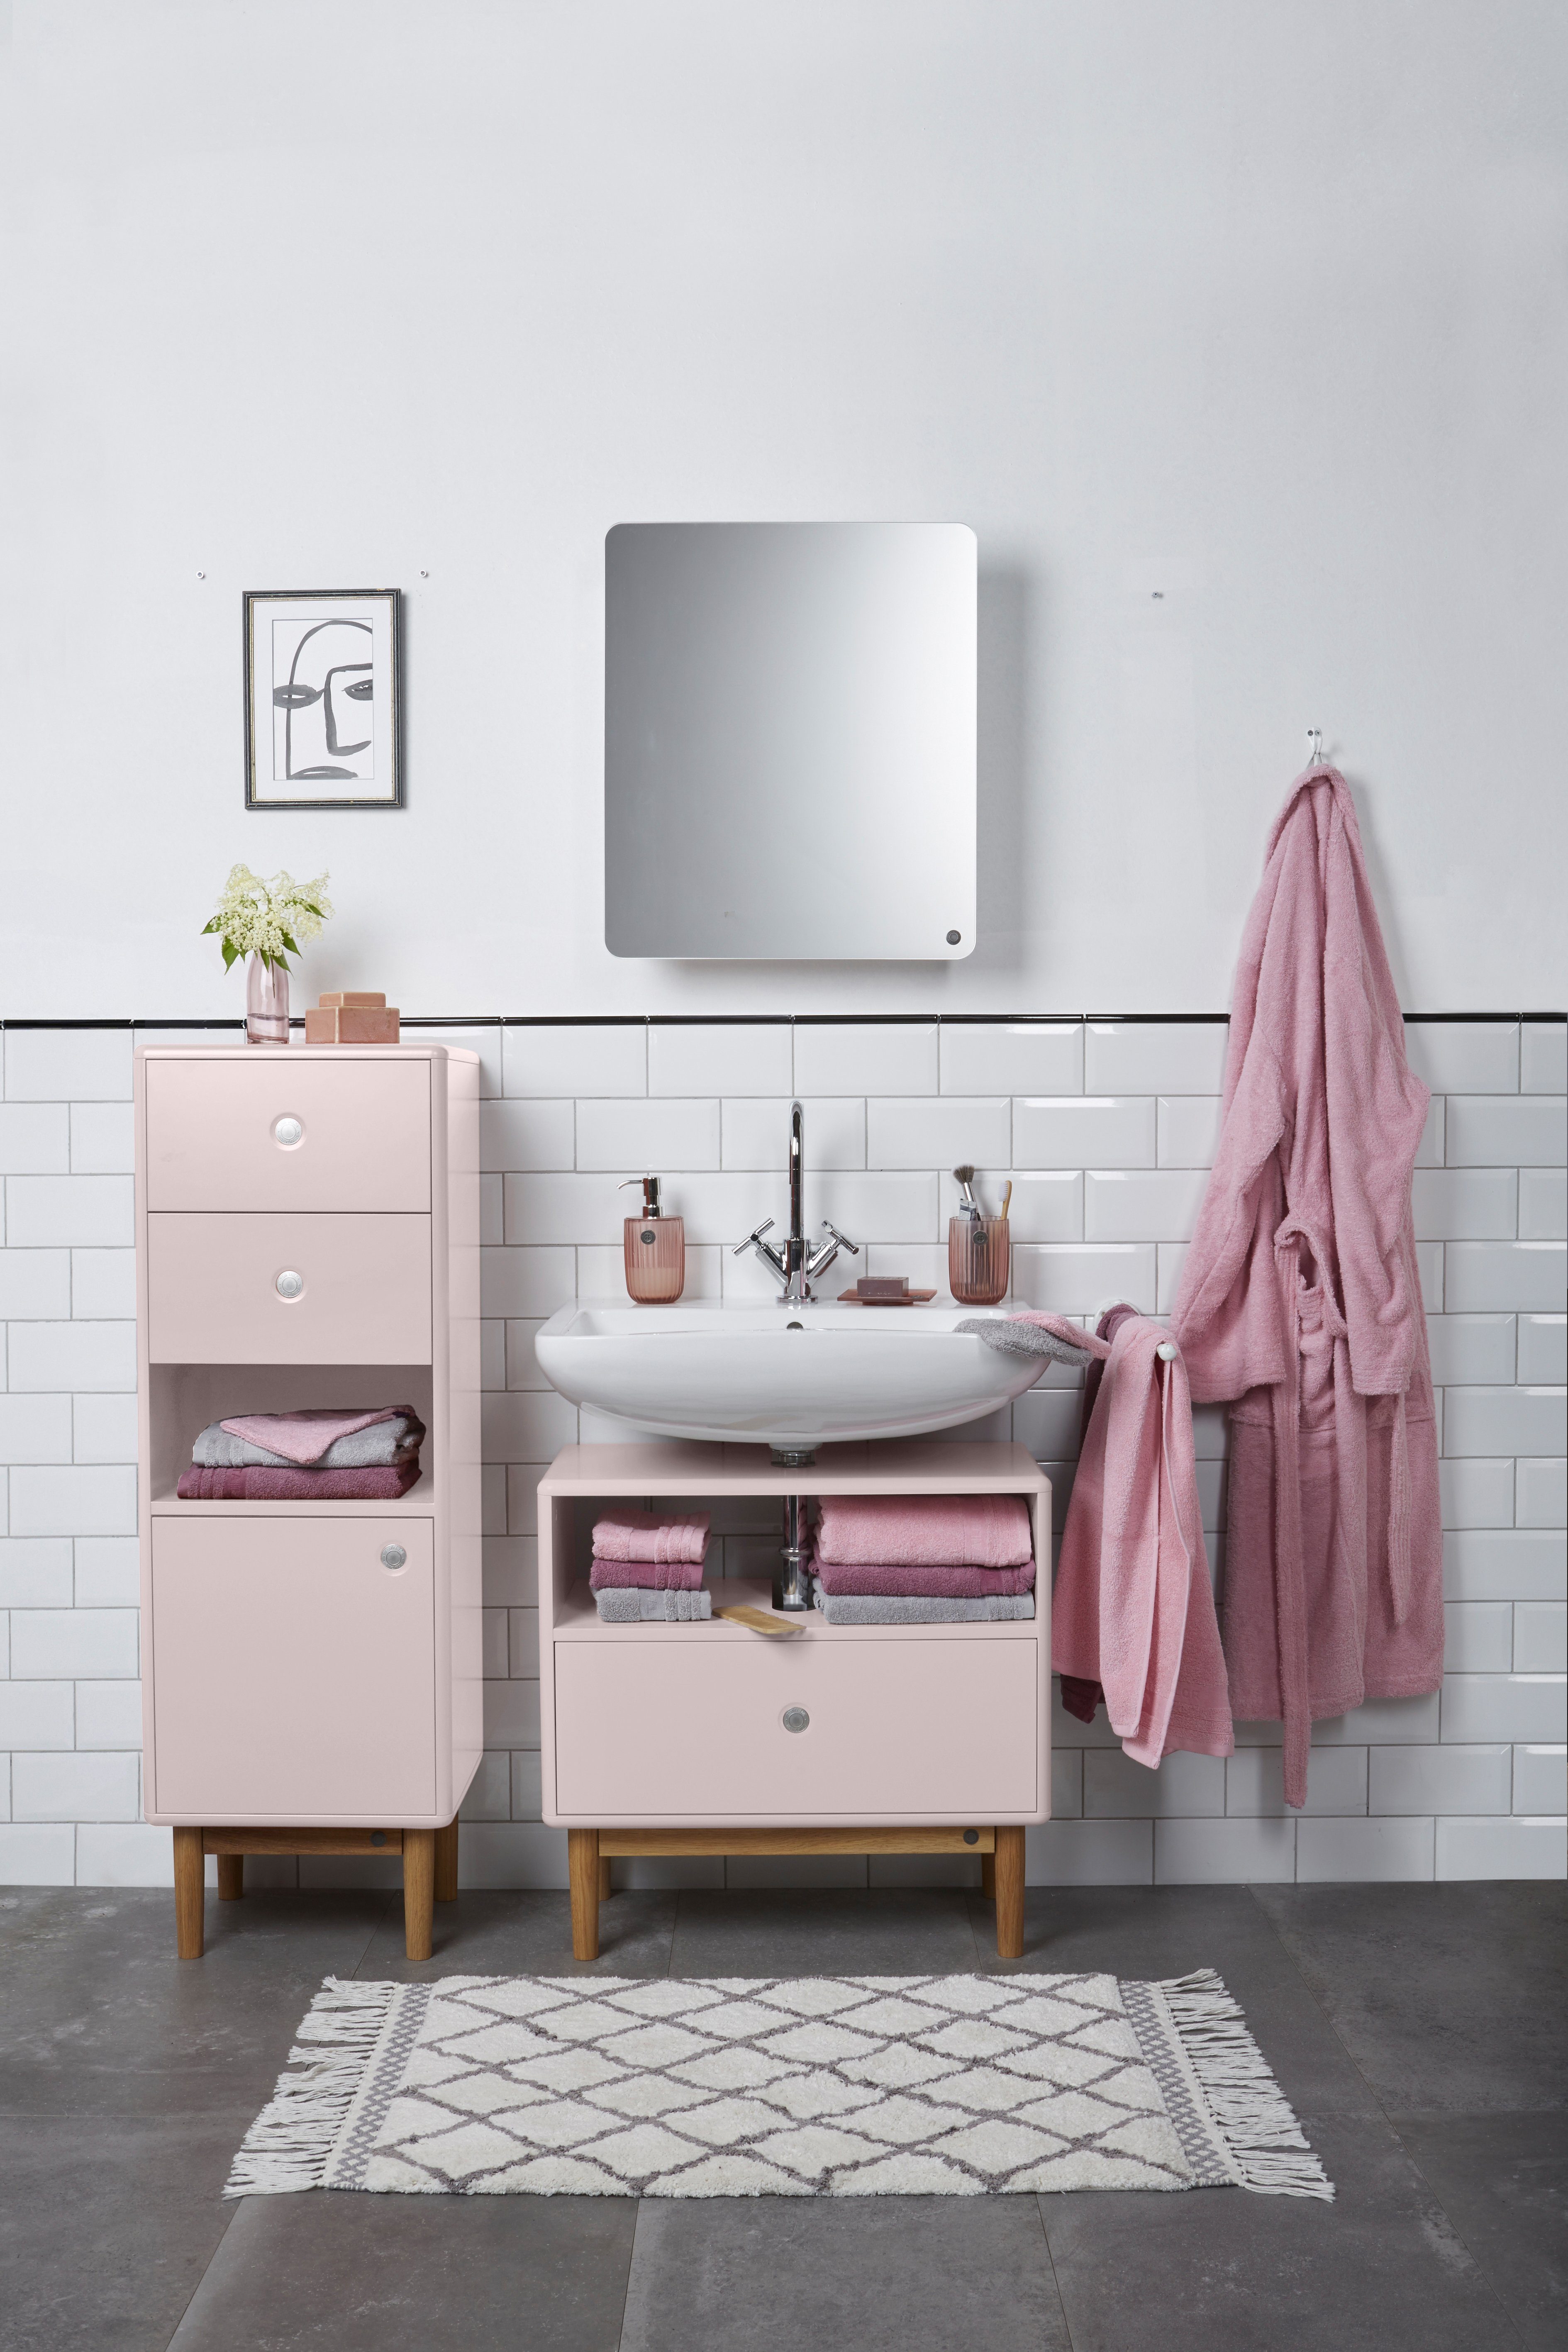 seidenmatt gerundeten lackiert Small mit mit Badspiegel Farben, Tür Mirror TOM Ecken, in BATH aus vielen COLOR MDF Tür TAILOR - Stauraum, mit rose006 HOME -